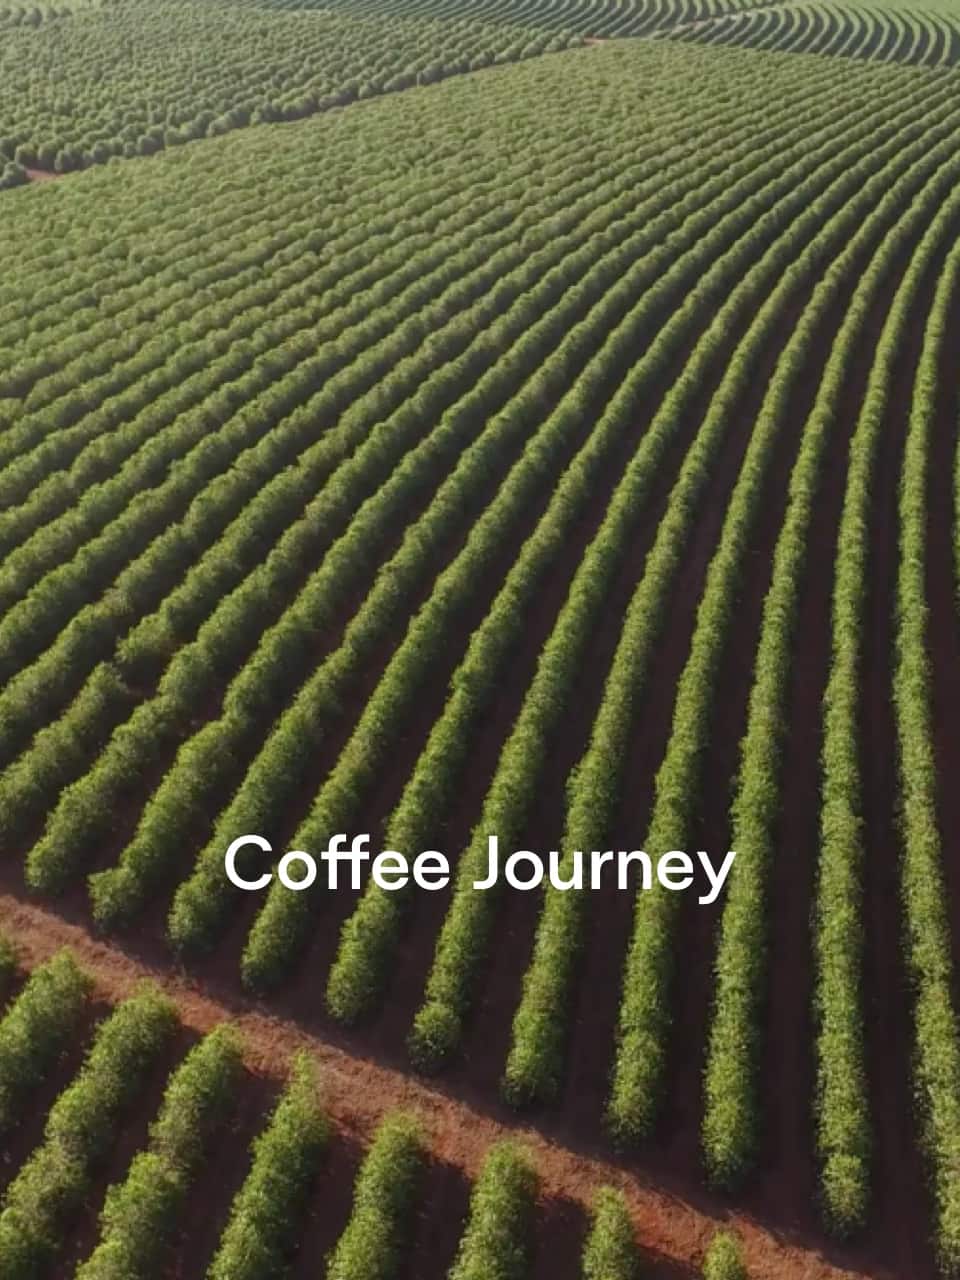 Coffee journey - Coffee Lounge